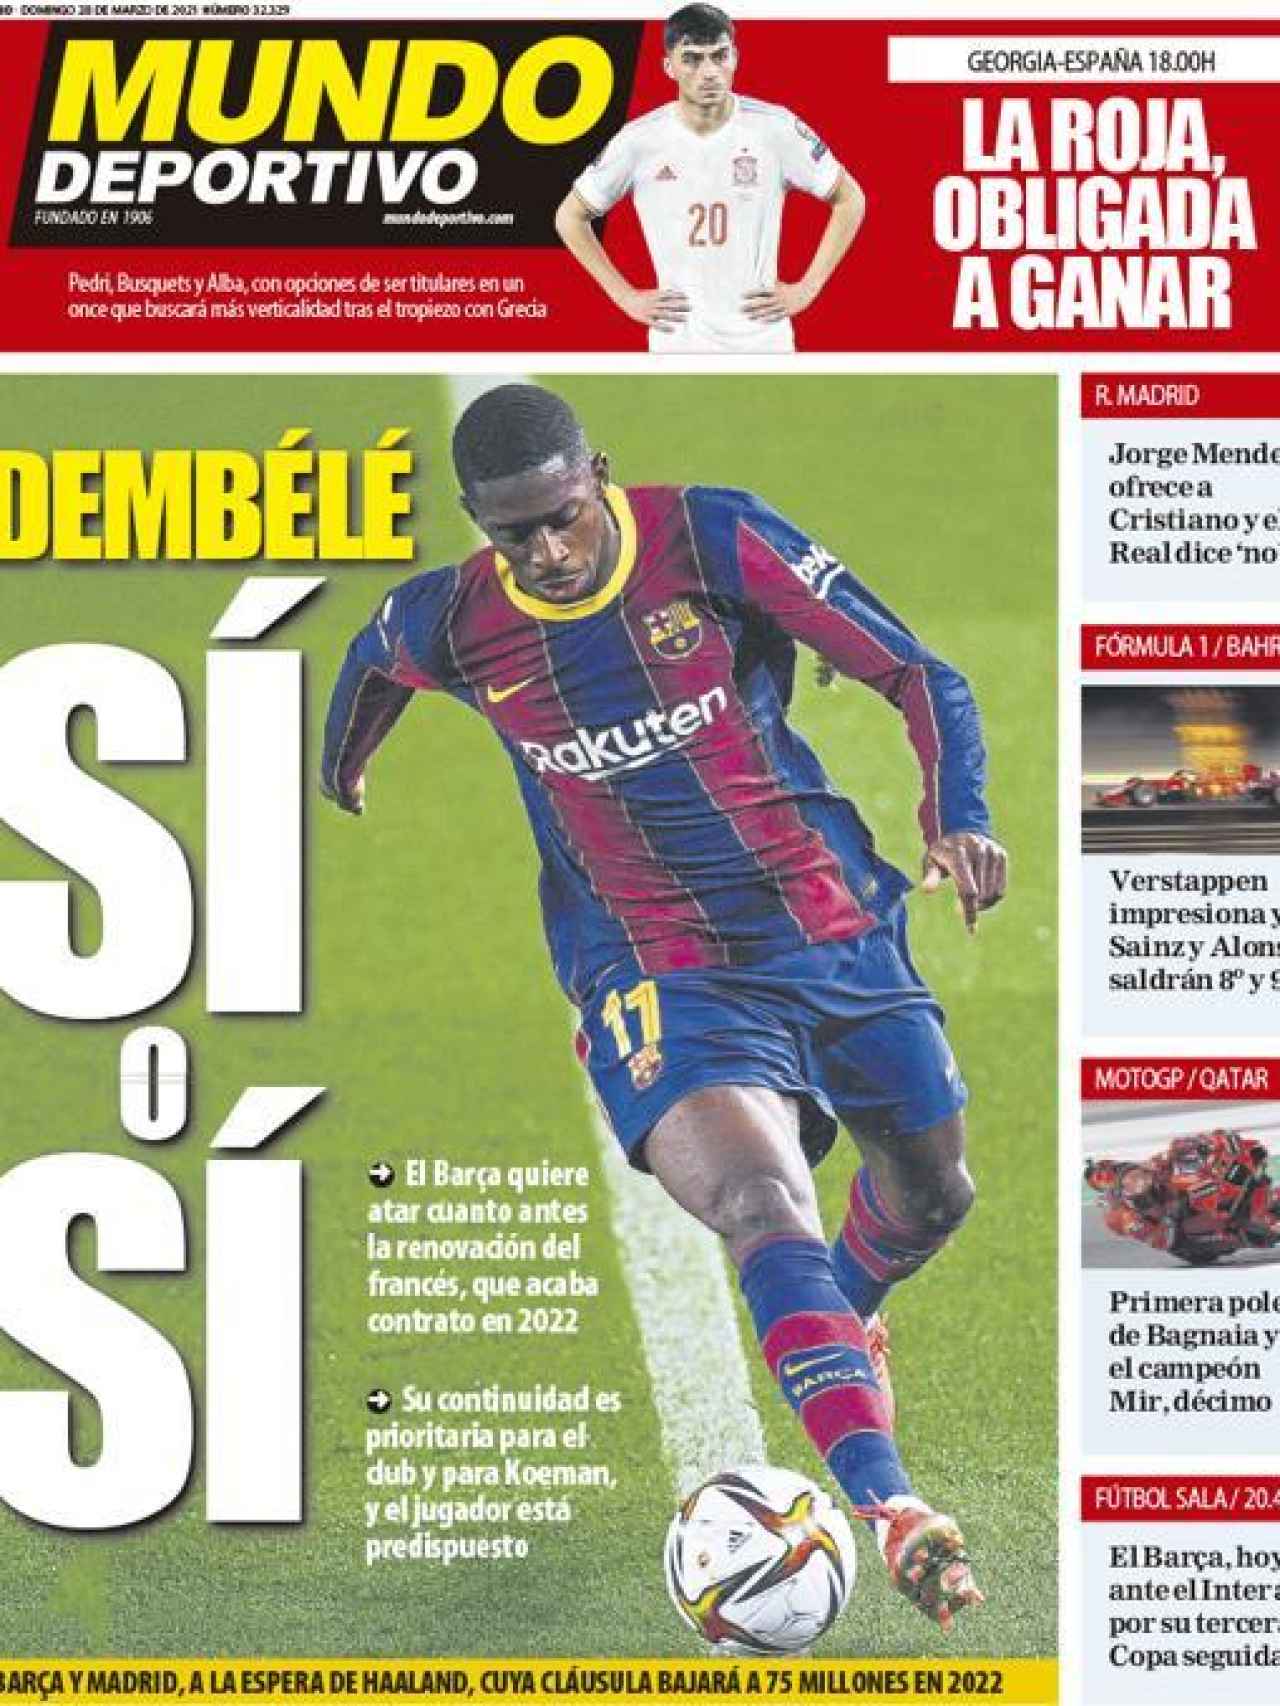 La portada del diario Mundo Deportivo (28/03/2021)